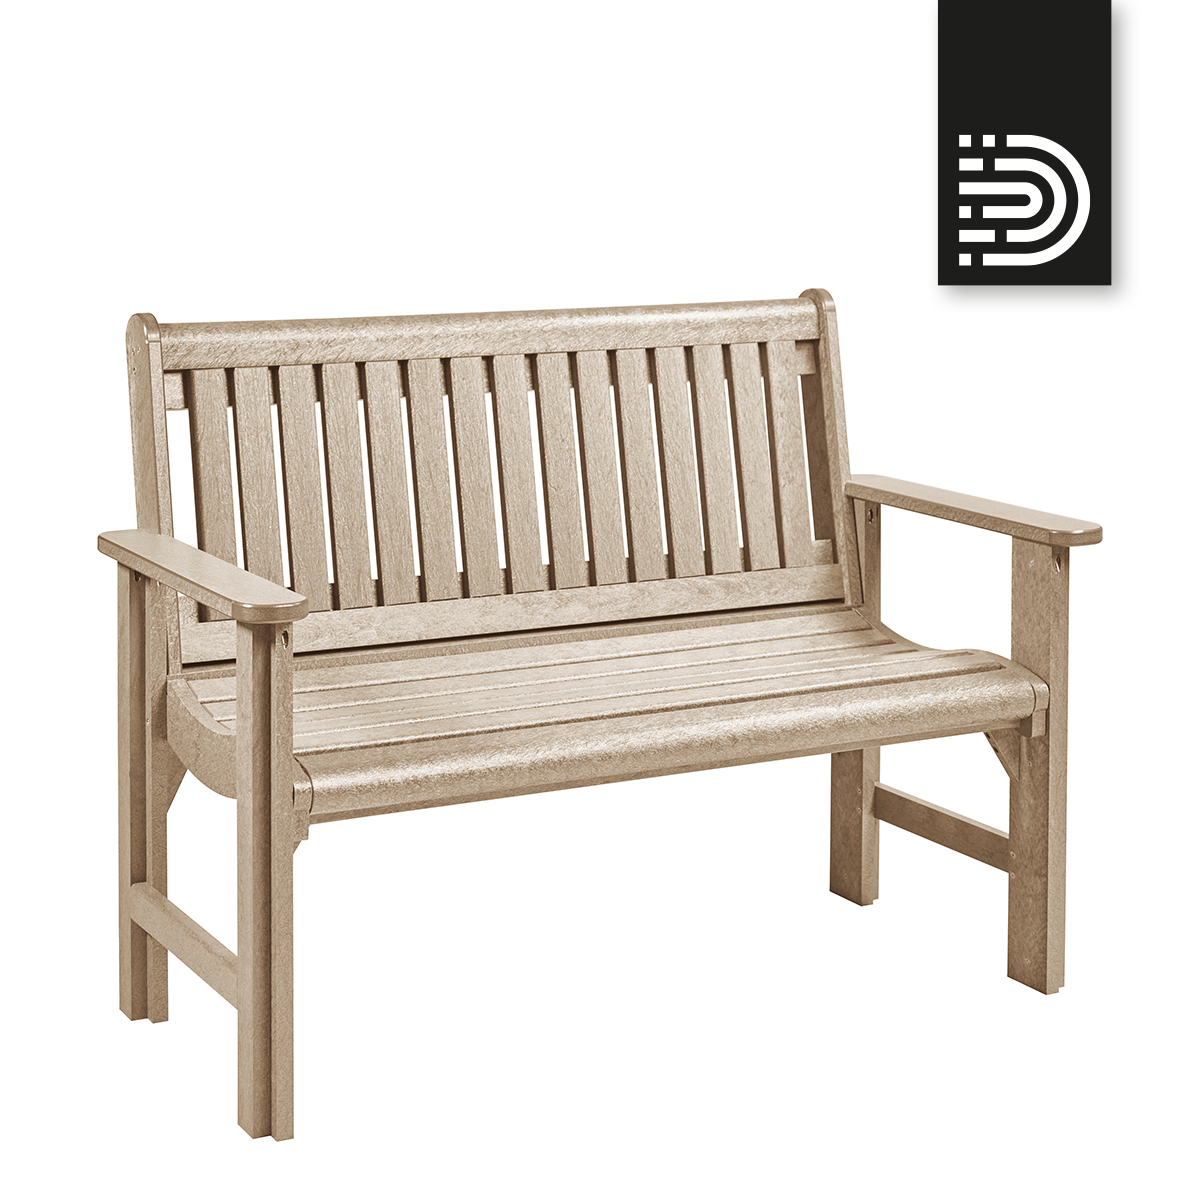 B01 4' Premium Garden Bench- beige 07